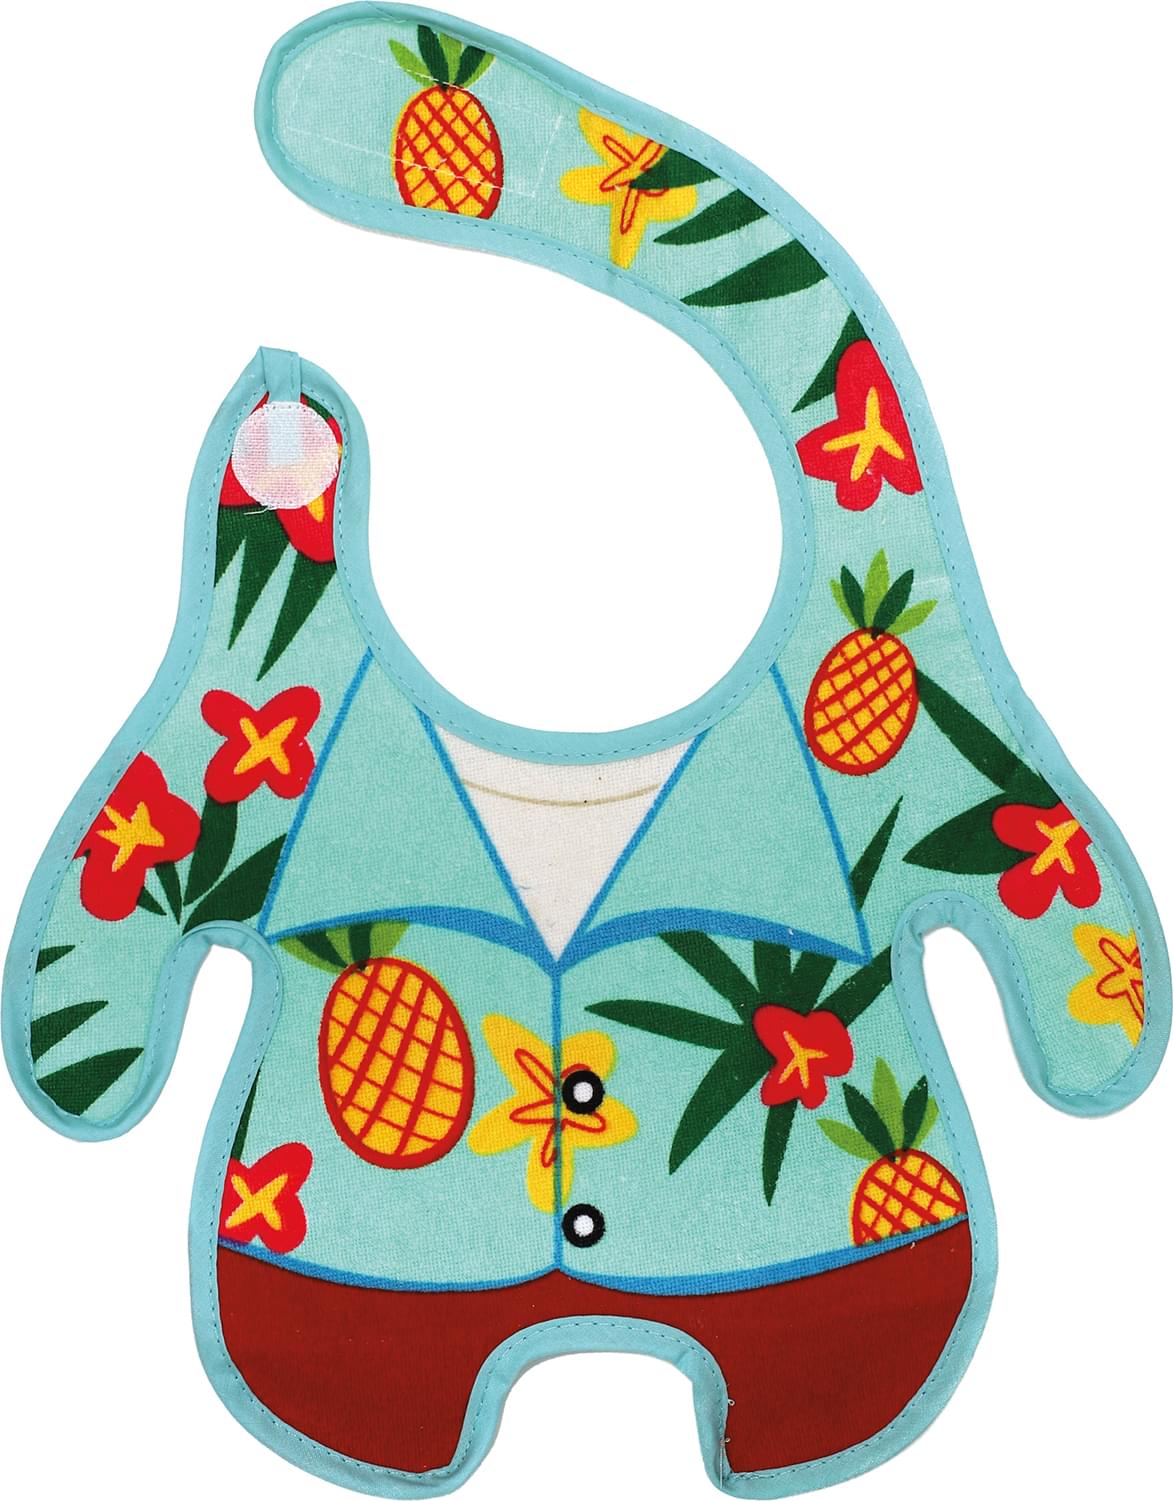 GAMAGO Hawaiian Shirt Terrycloth Baby Bib